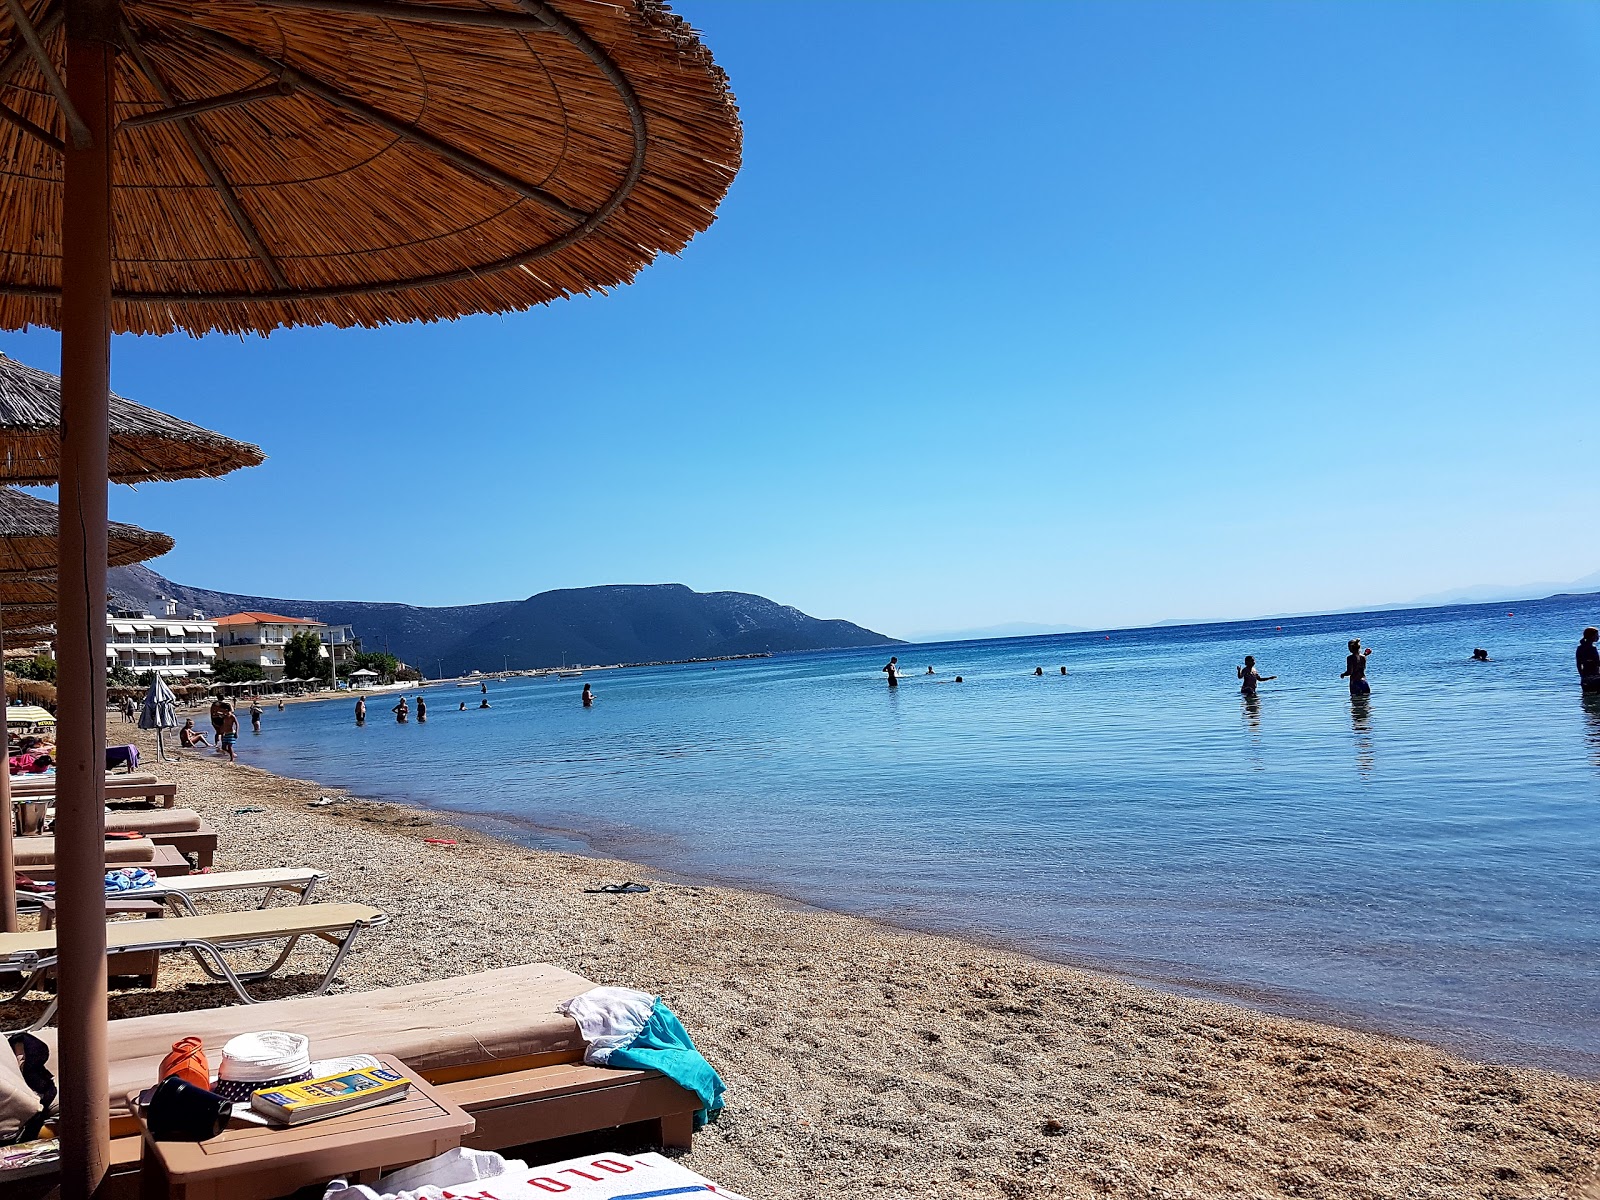 Fotografie cu Figias beach - locul popular printre cunoscătorii de relaxare